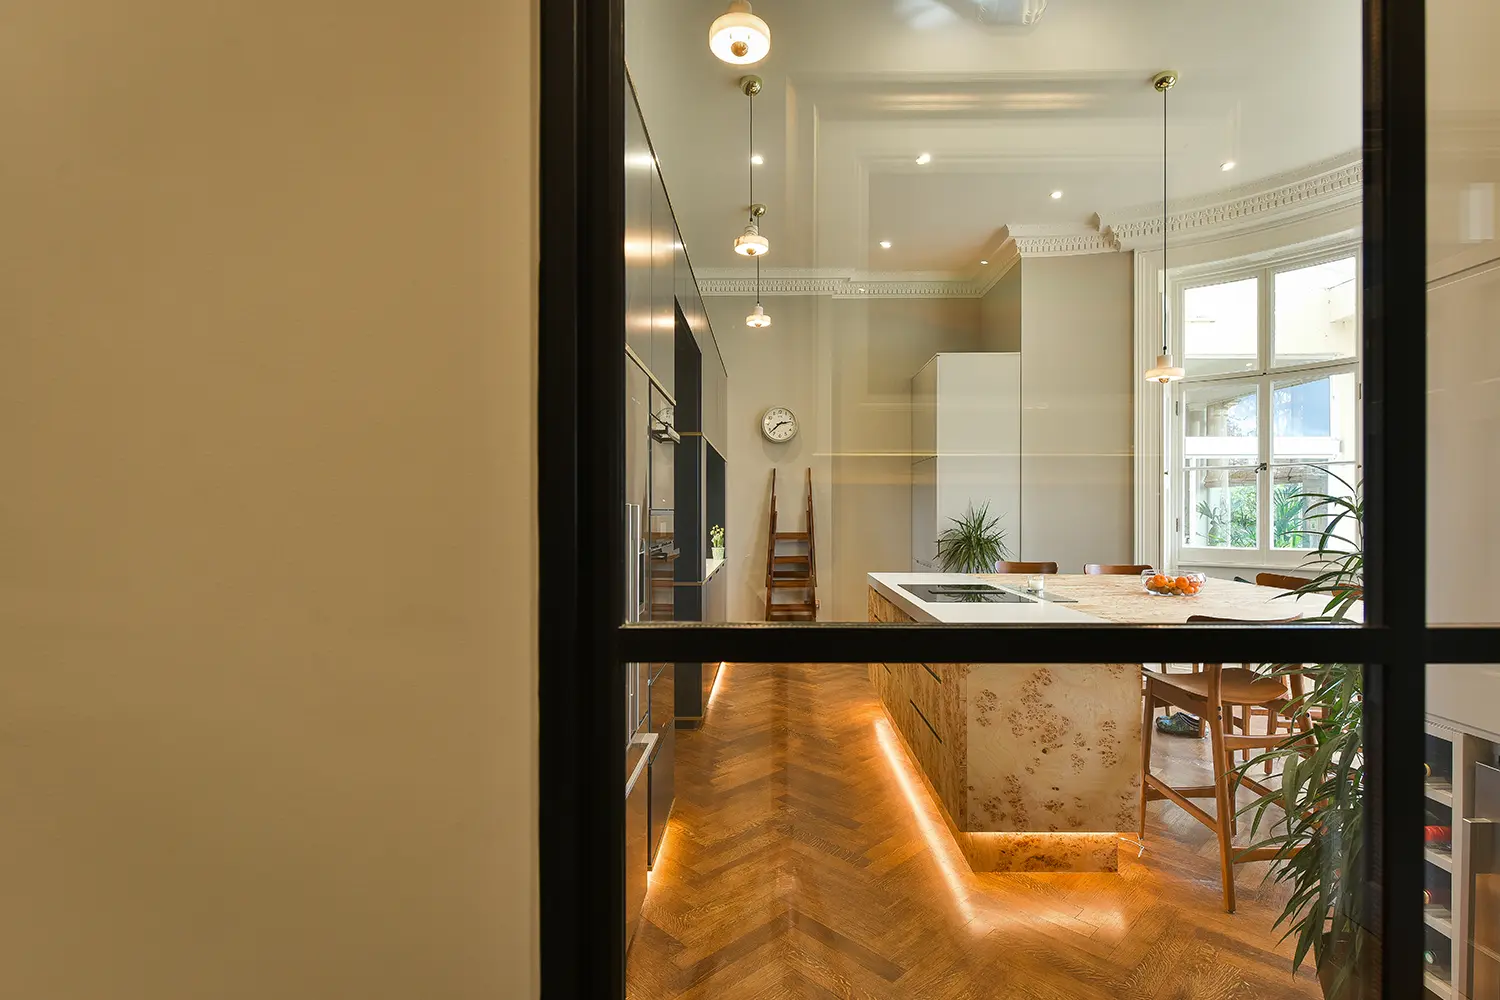 Heathfield Historic Apartment kitchen interior design